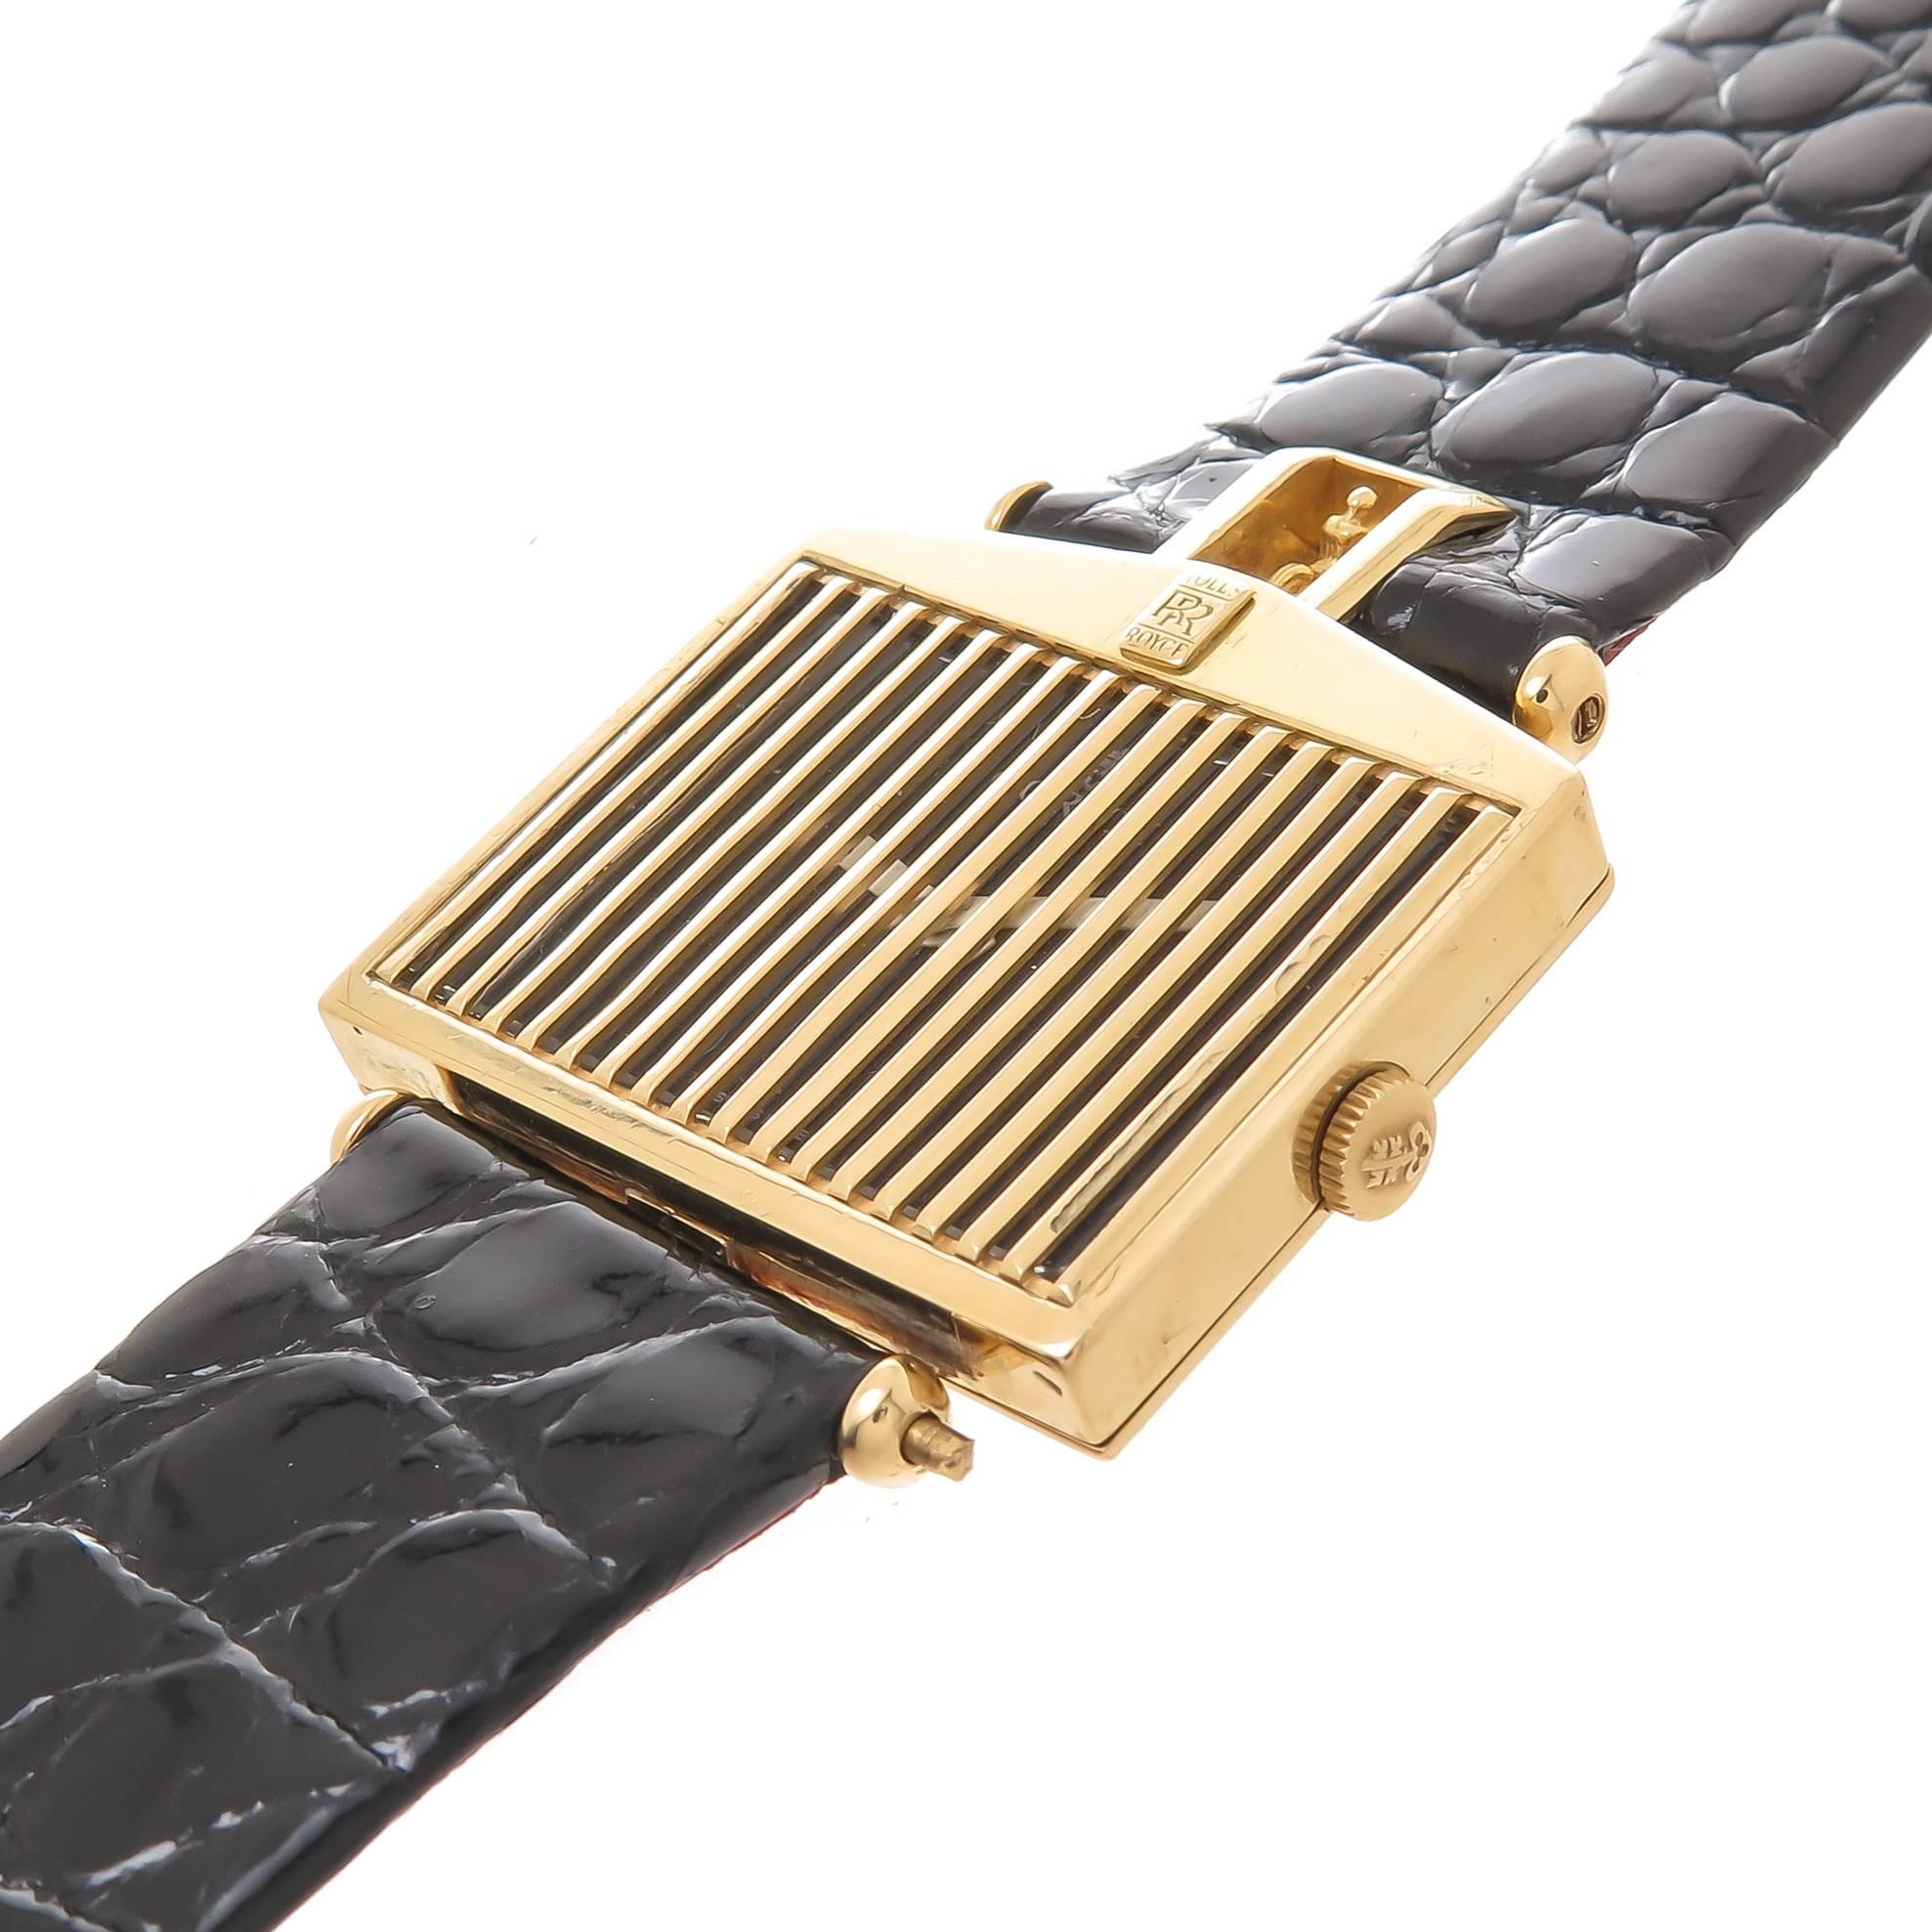 Circa 1980 Corum Rolls-Royce Wrist Watch:: 33 X 29 MM 18K Yellow Gold Case:: ayant une grille d'or sur le cristal qui protège le cadran noir avec des aiguilles blanches. mécanique 17 rubis:: vent manuel Mouvement. Bracelet noir texturé d'origine